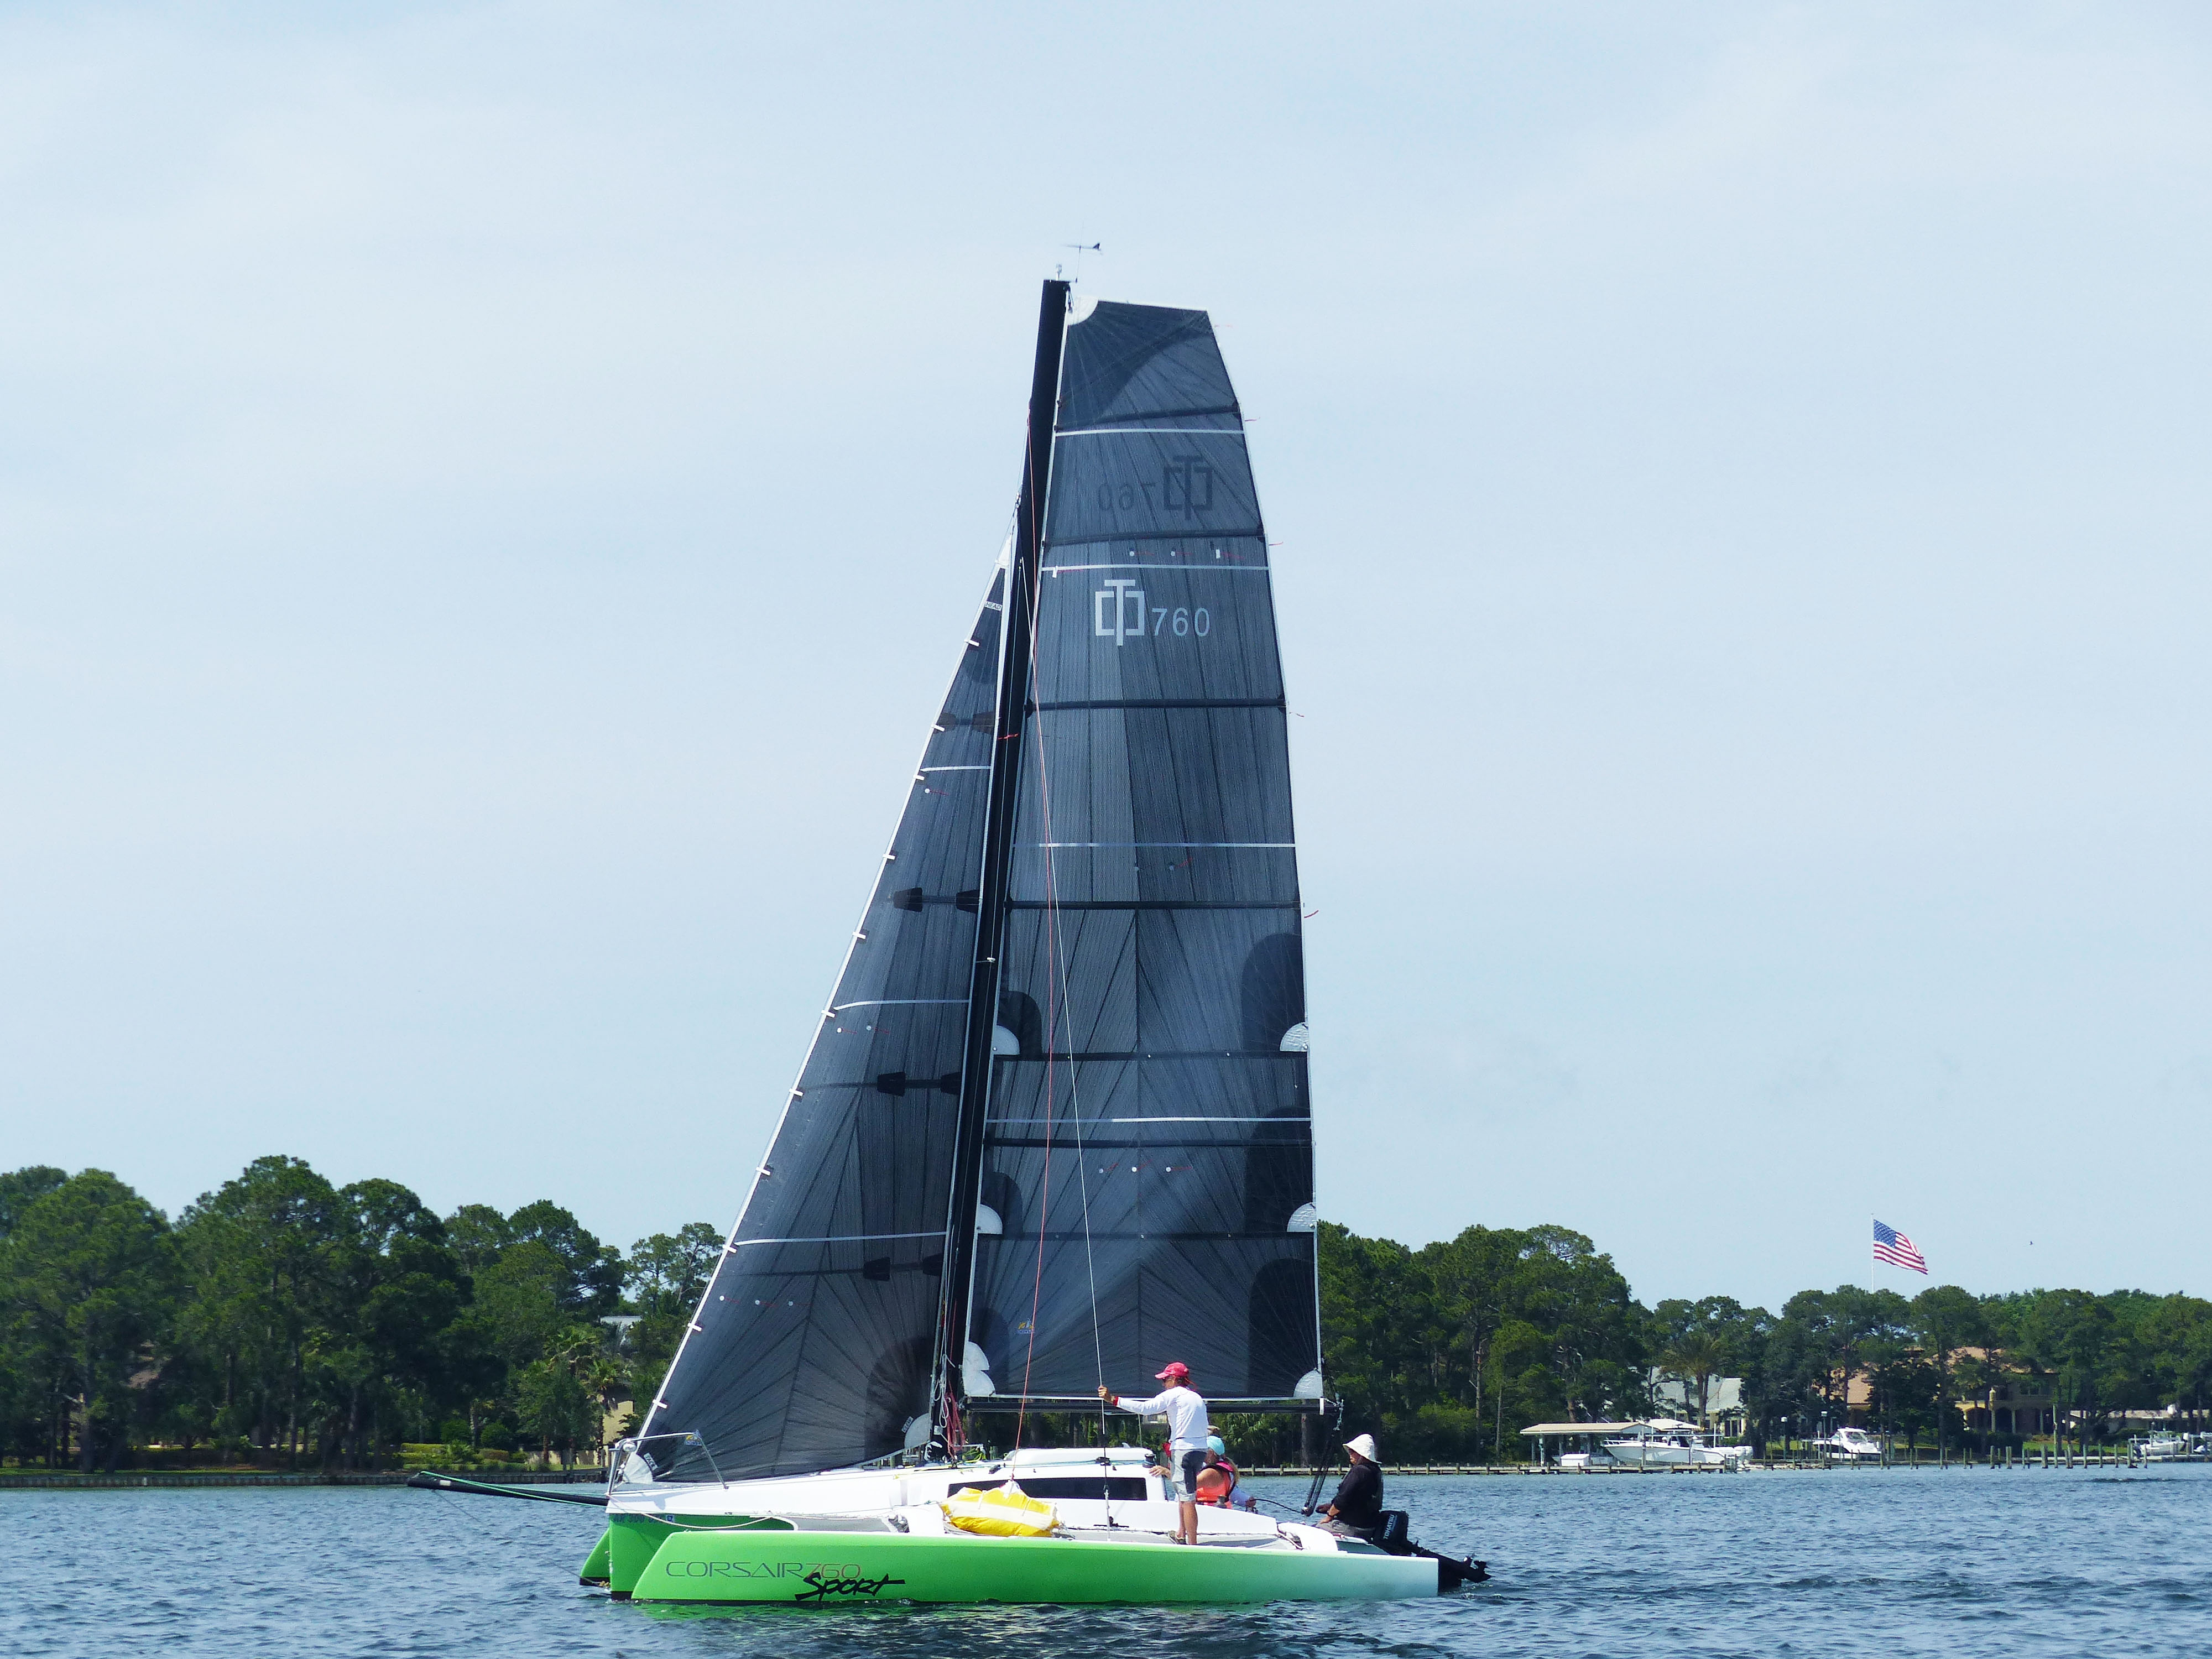 6th-annual-performance-sailing-clinic-corsair-760